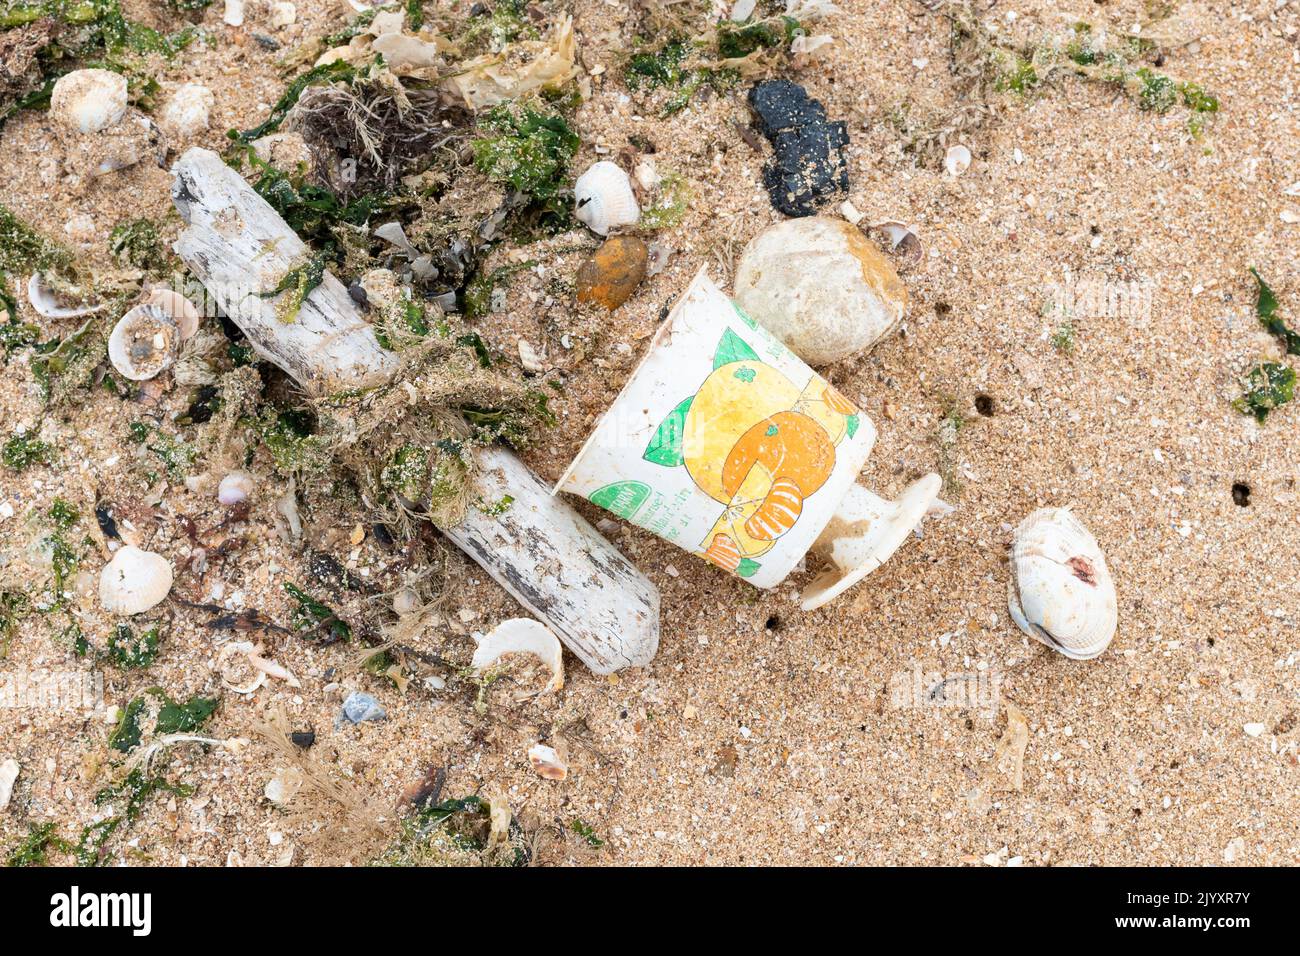 Plastikverschmutzung großbritannien - Einweg-Plastikverpackungen für Lebensmittel am Strand gewaschen - jahrzehntelanger 'Dessert Farm Joghurt' Topf am Strand gefunden im Jahr 2022 - England, Stockfoto